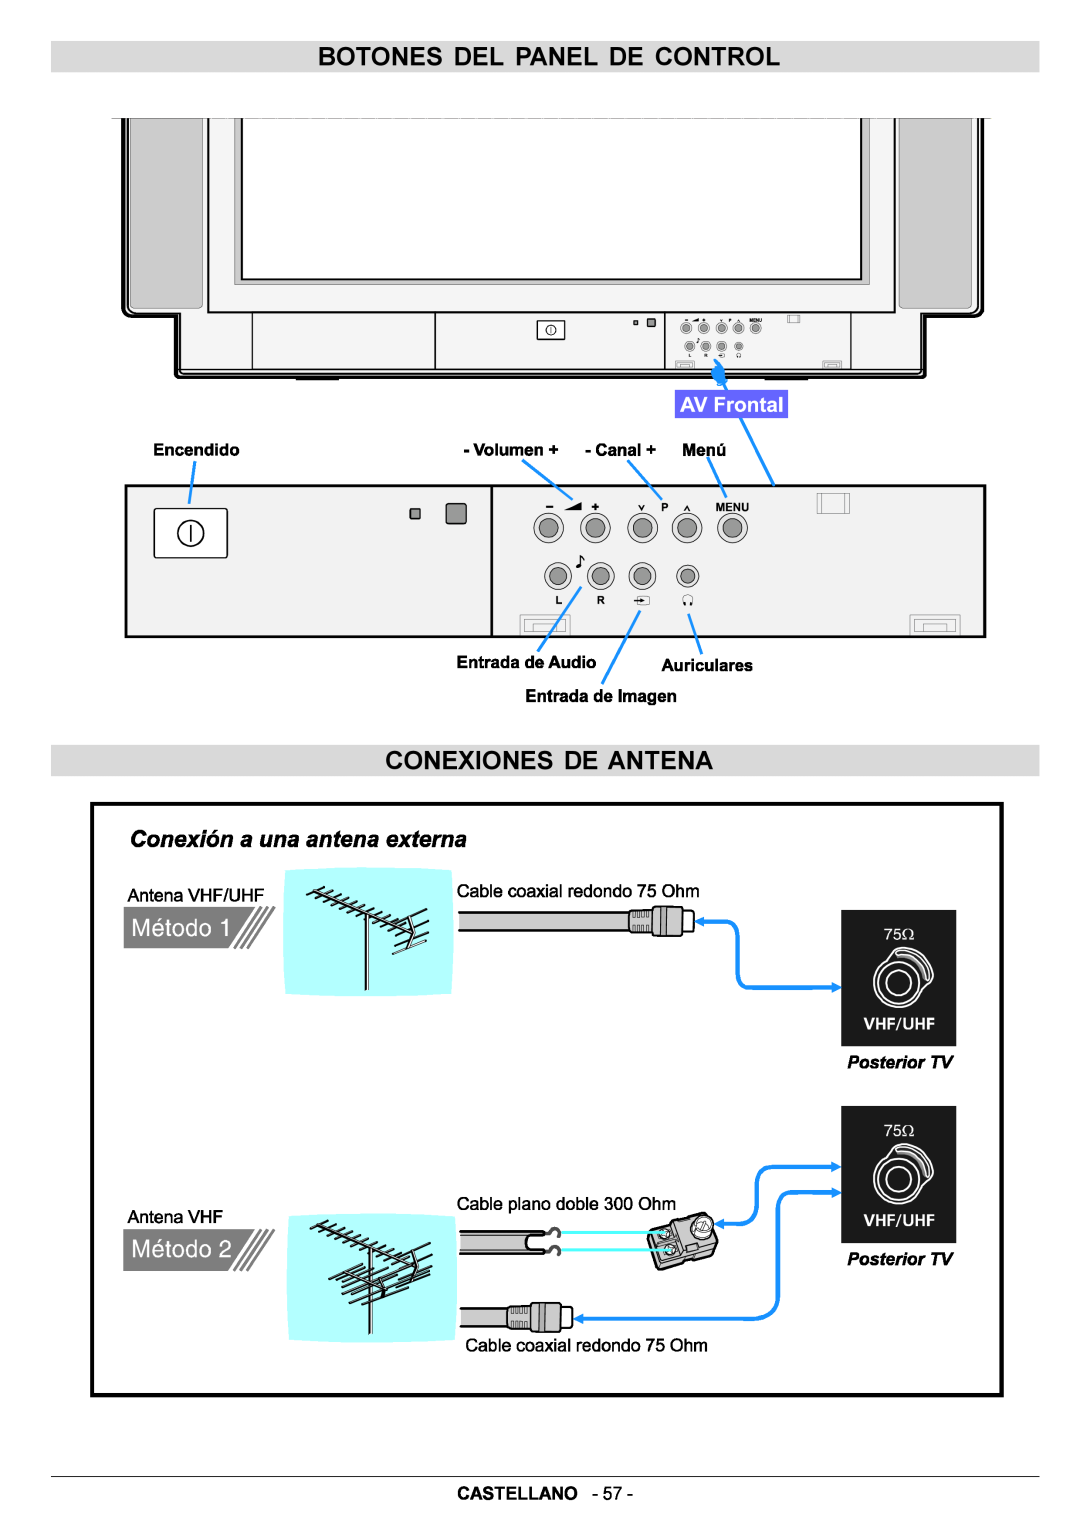 JVC AV29BF10EPS manual Botones Del Panel De Control Conexiones De Antena, Castellano 